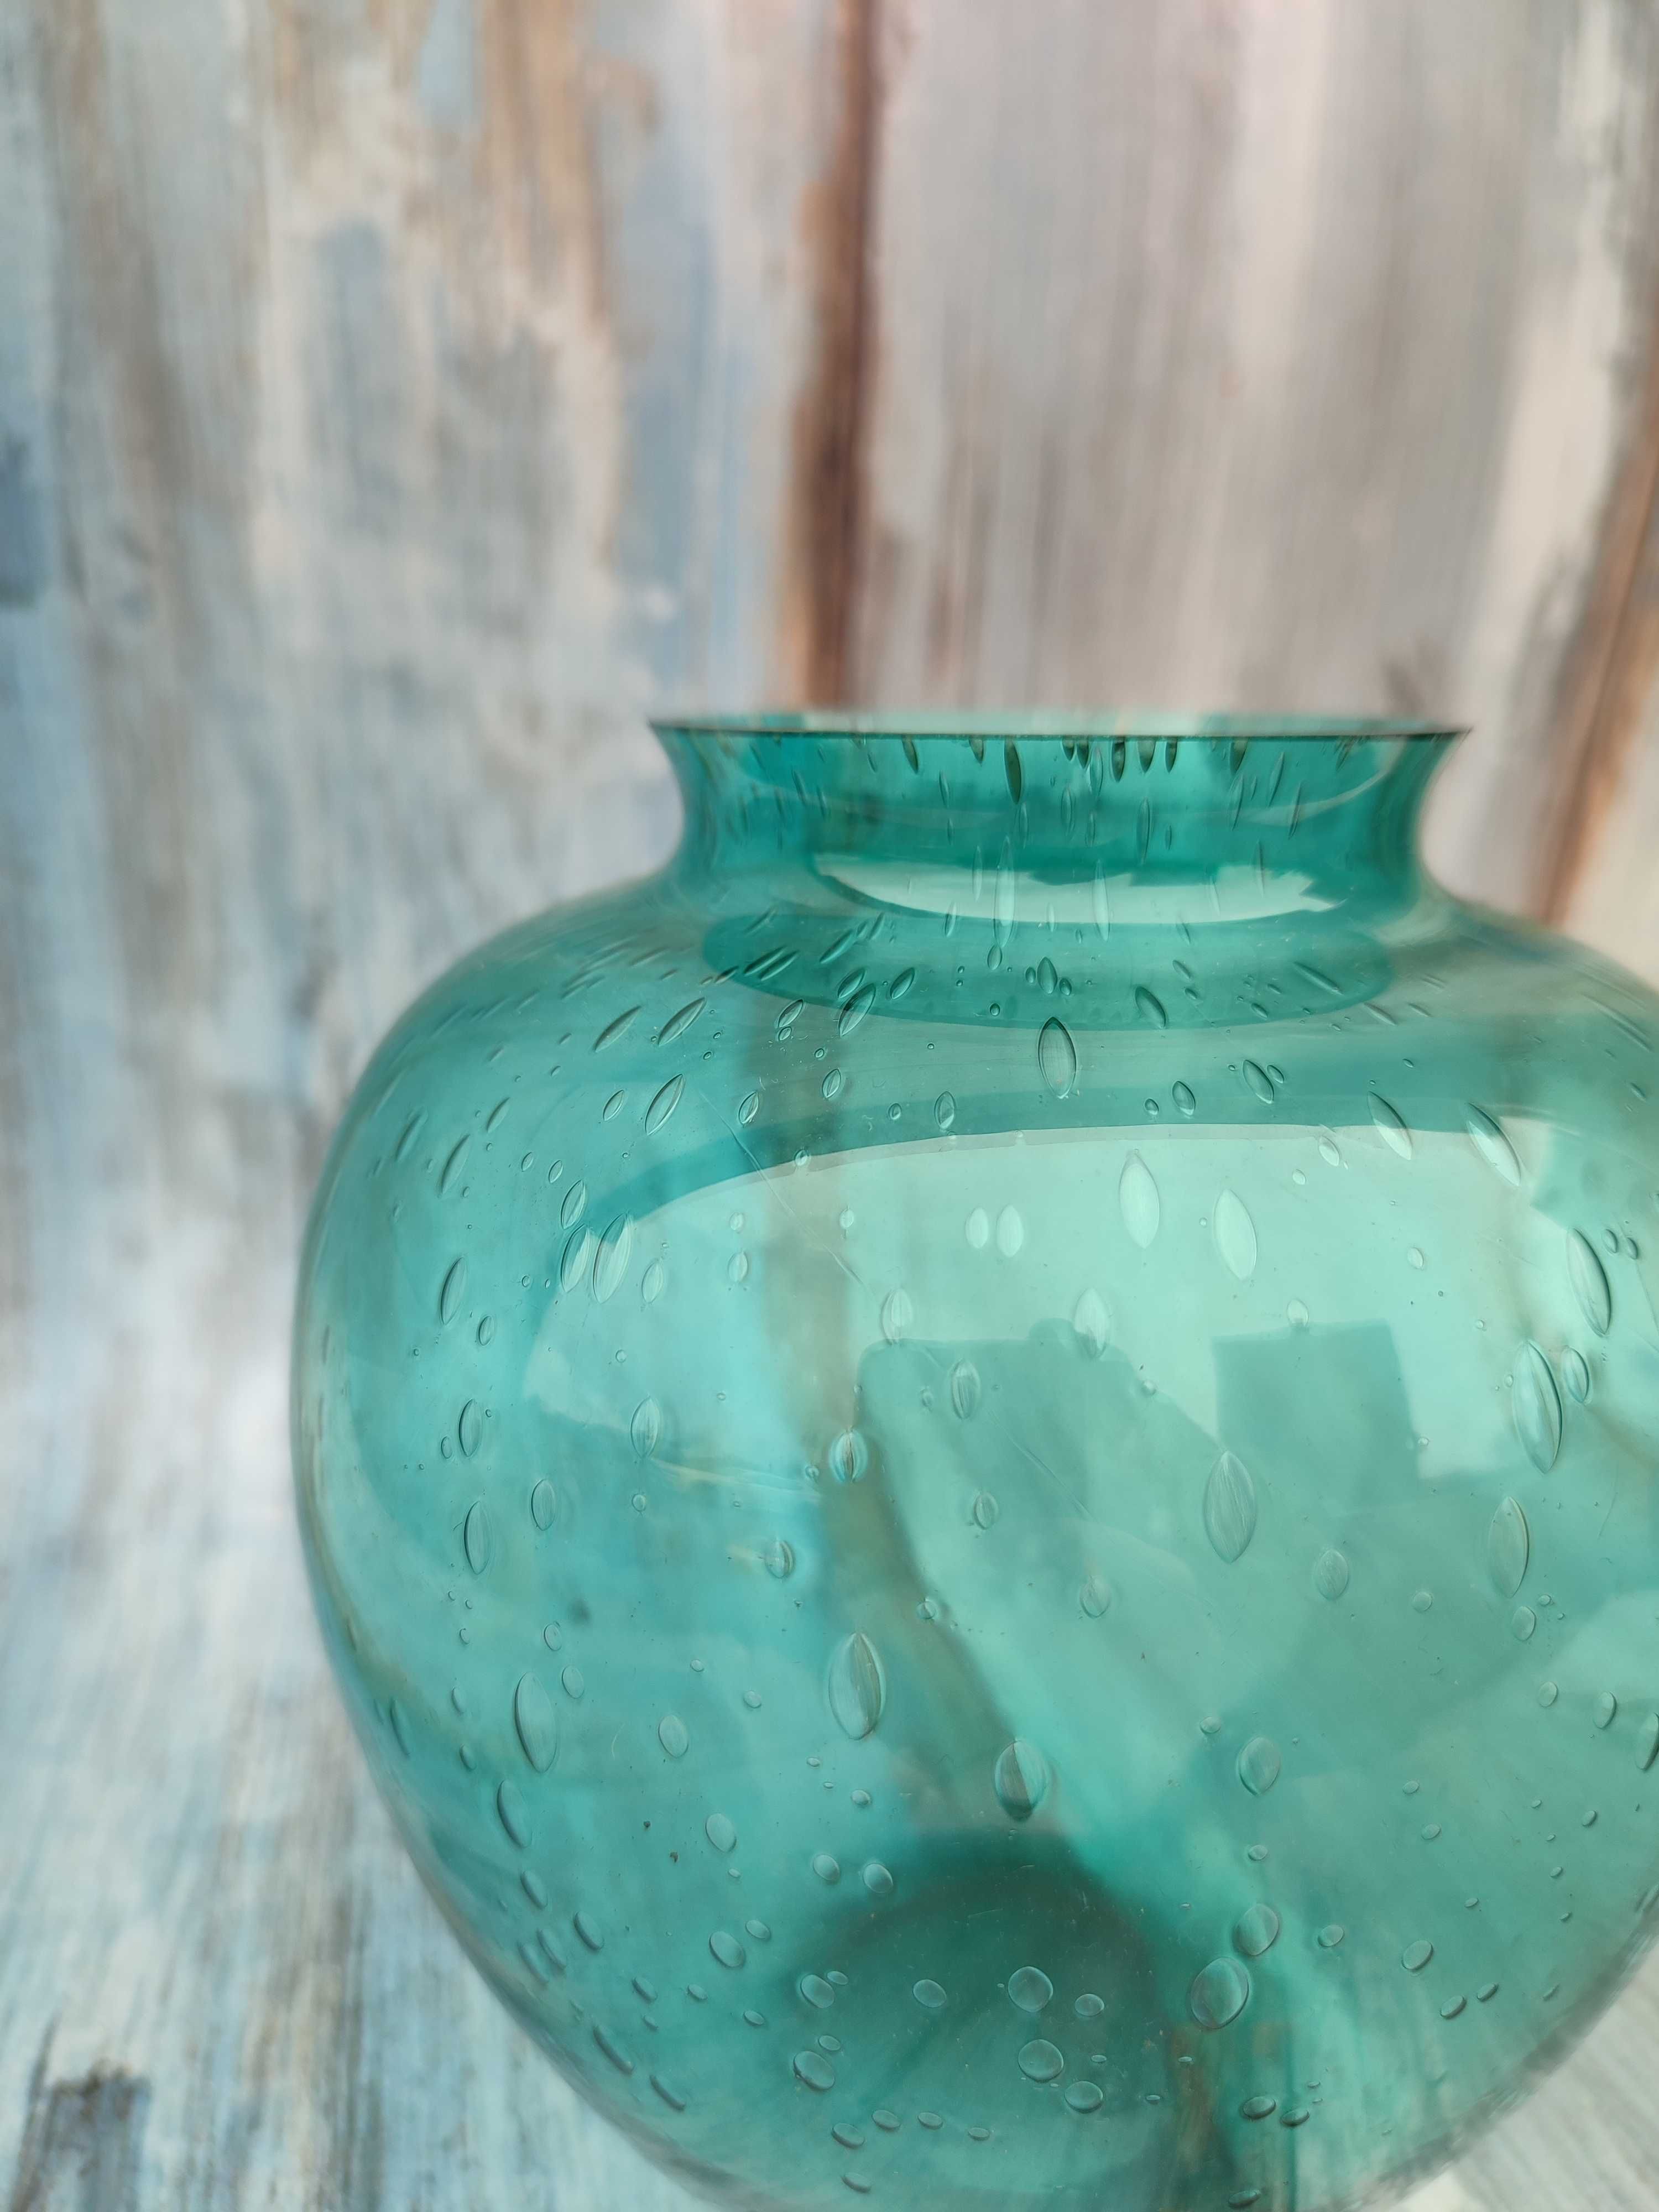 Szklany wazon Turkusowy - szkło z bombelkami lata 60/70 Vintage